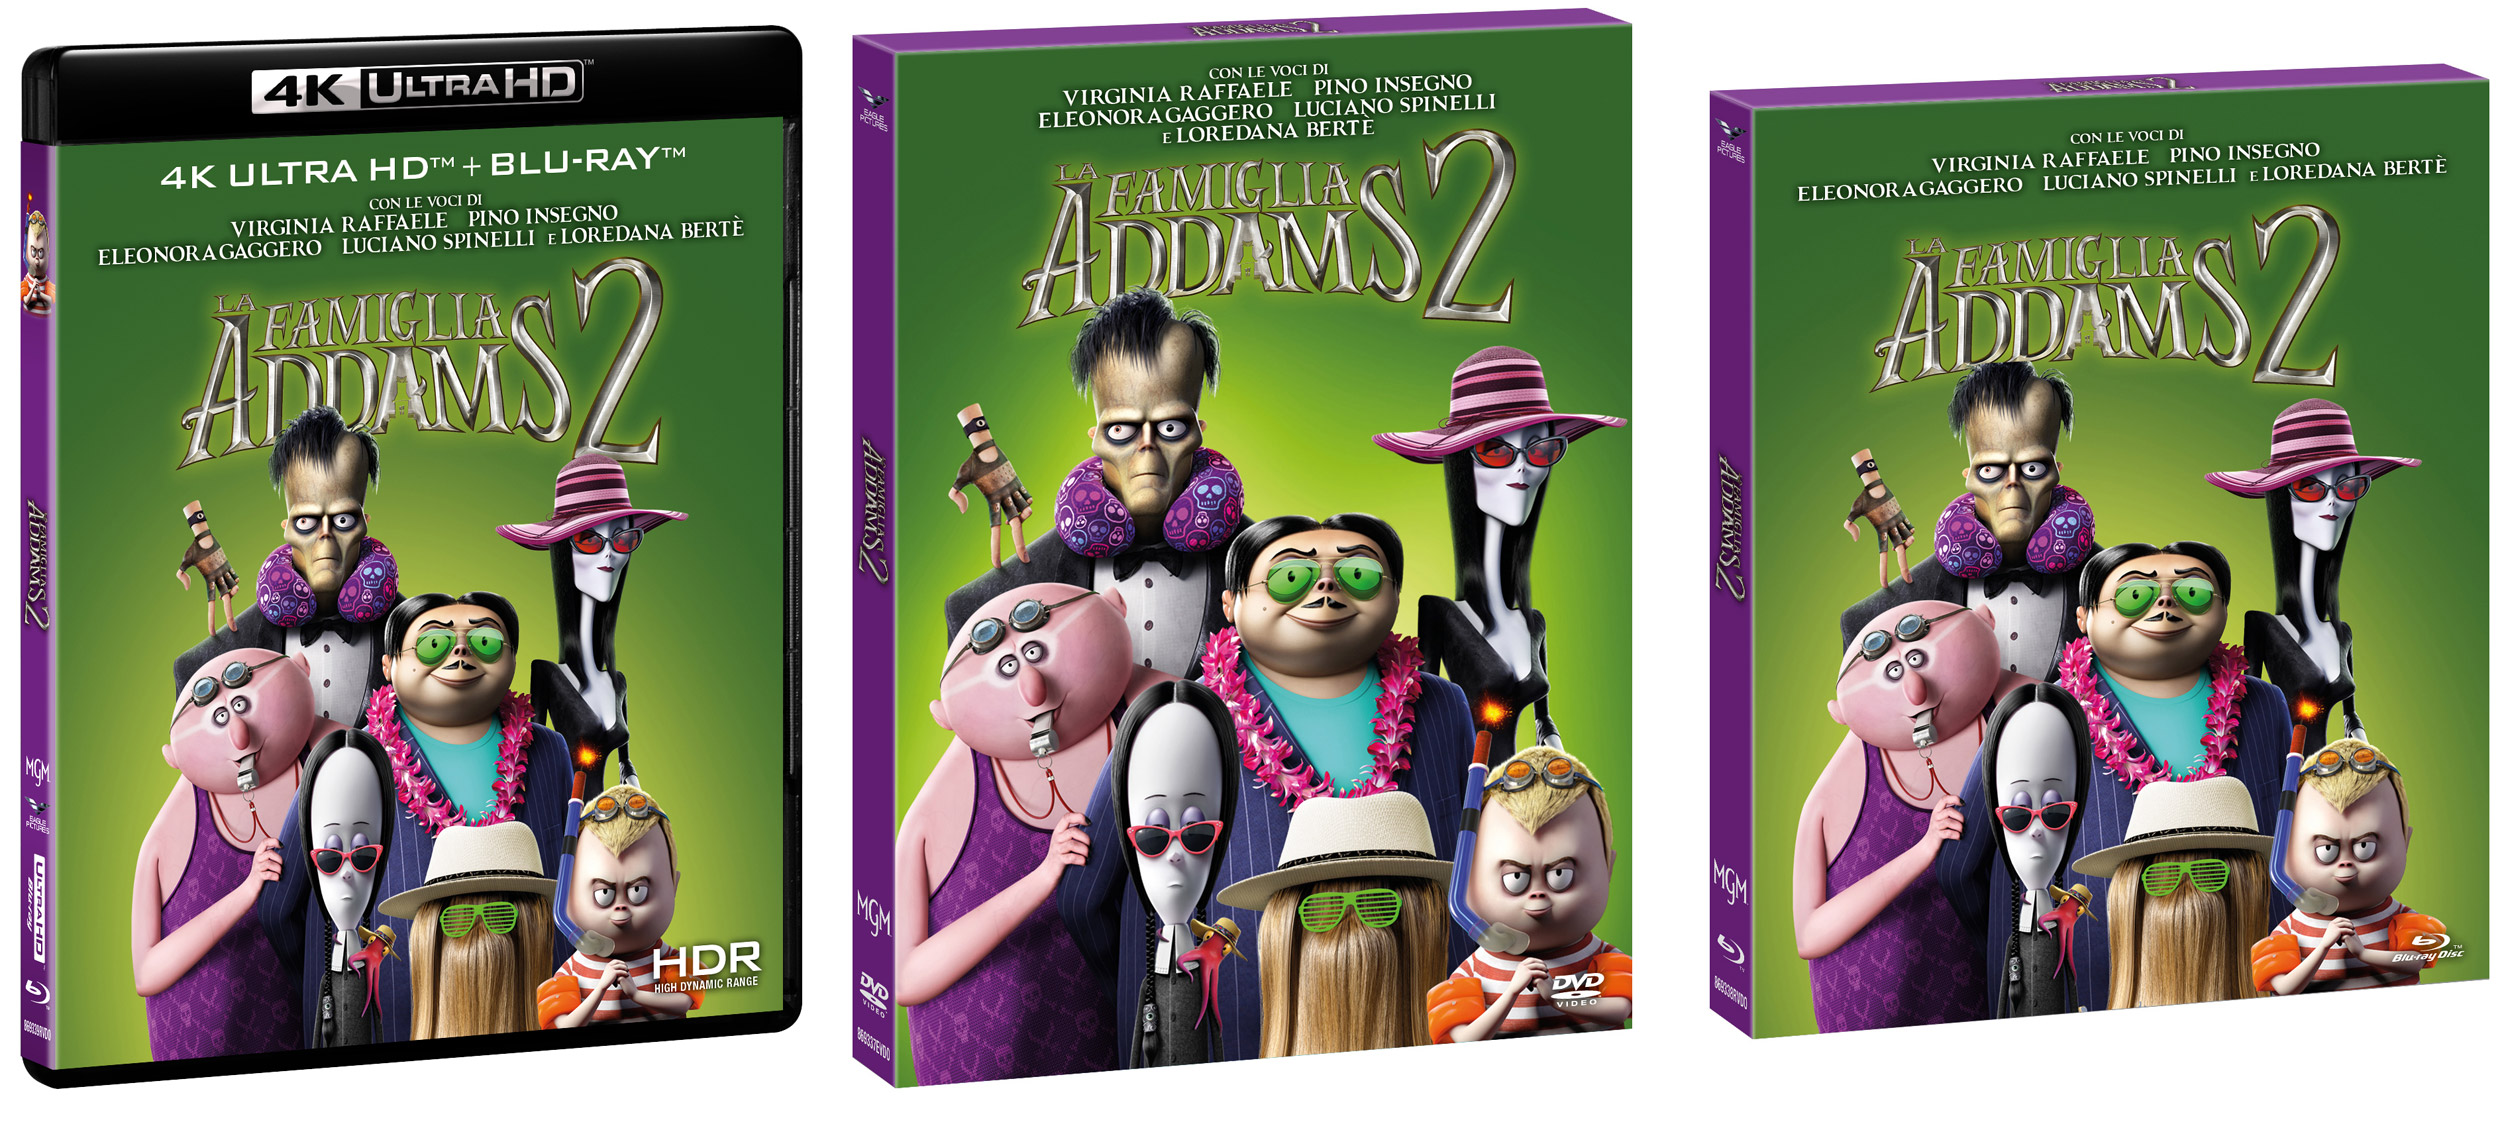 La famiglia Addams 2 di Greg Tiernan in DVD, Blu-Ray e 4K